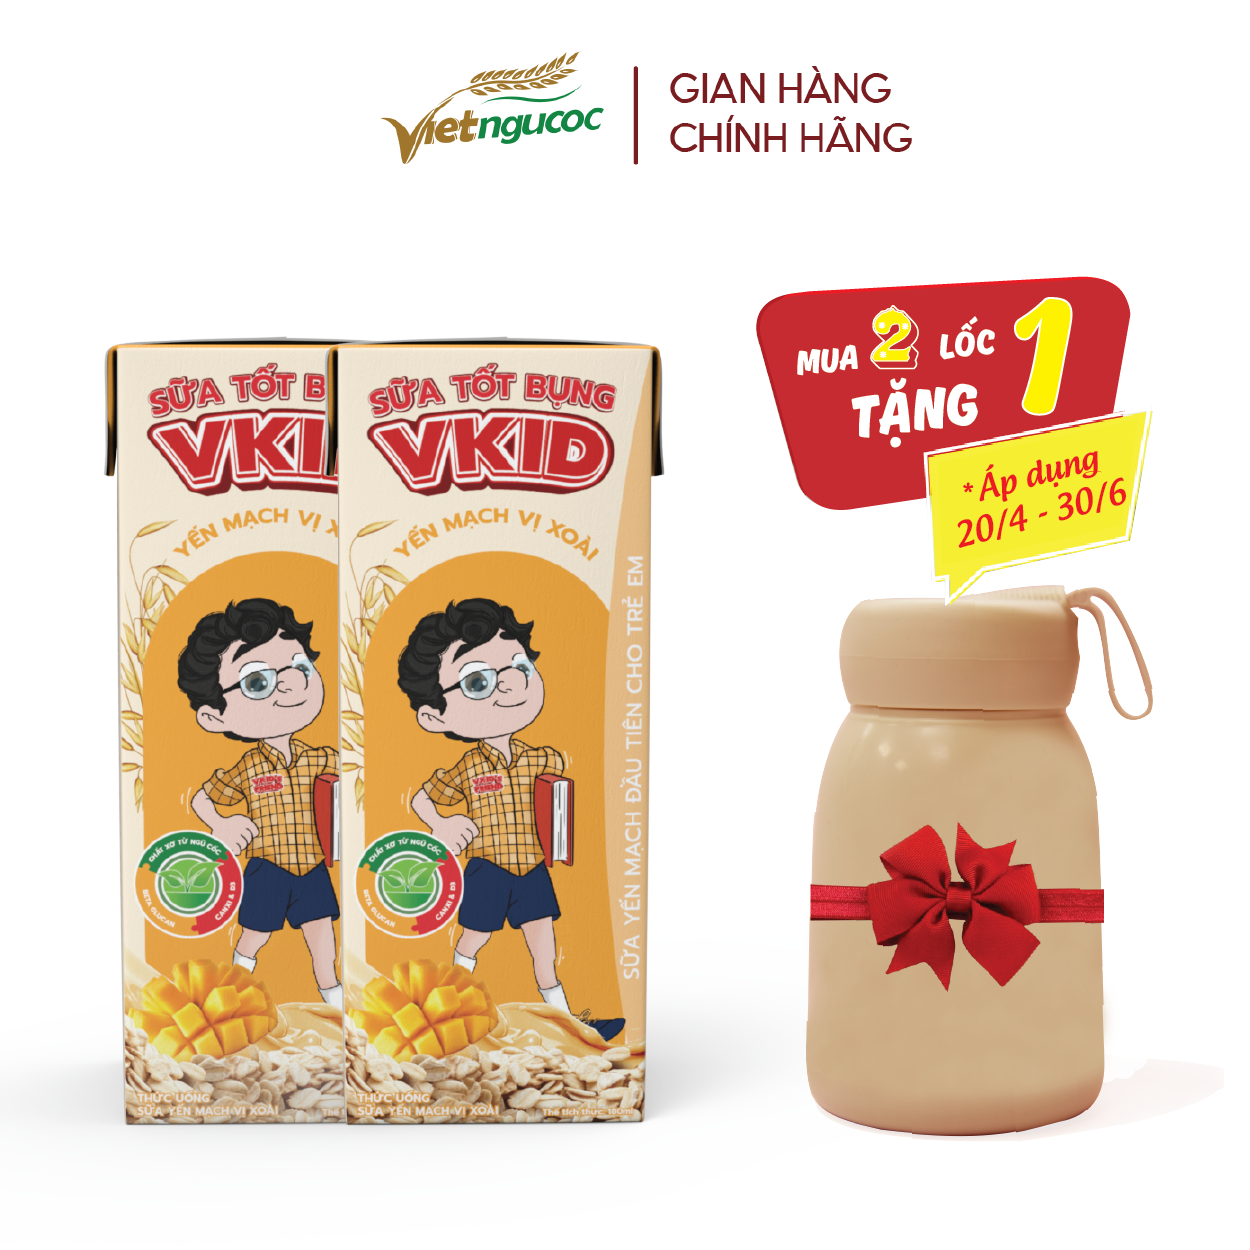 (Tặng 1 bình V-Kid) COMBO 2 Lốc 4 Hộp Sữa Yến Mạch V-Kid VIỆT NGŨ CỐC Vị Xoài 180ml/Hộp